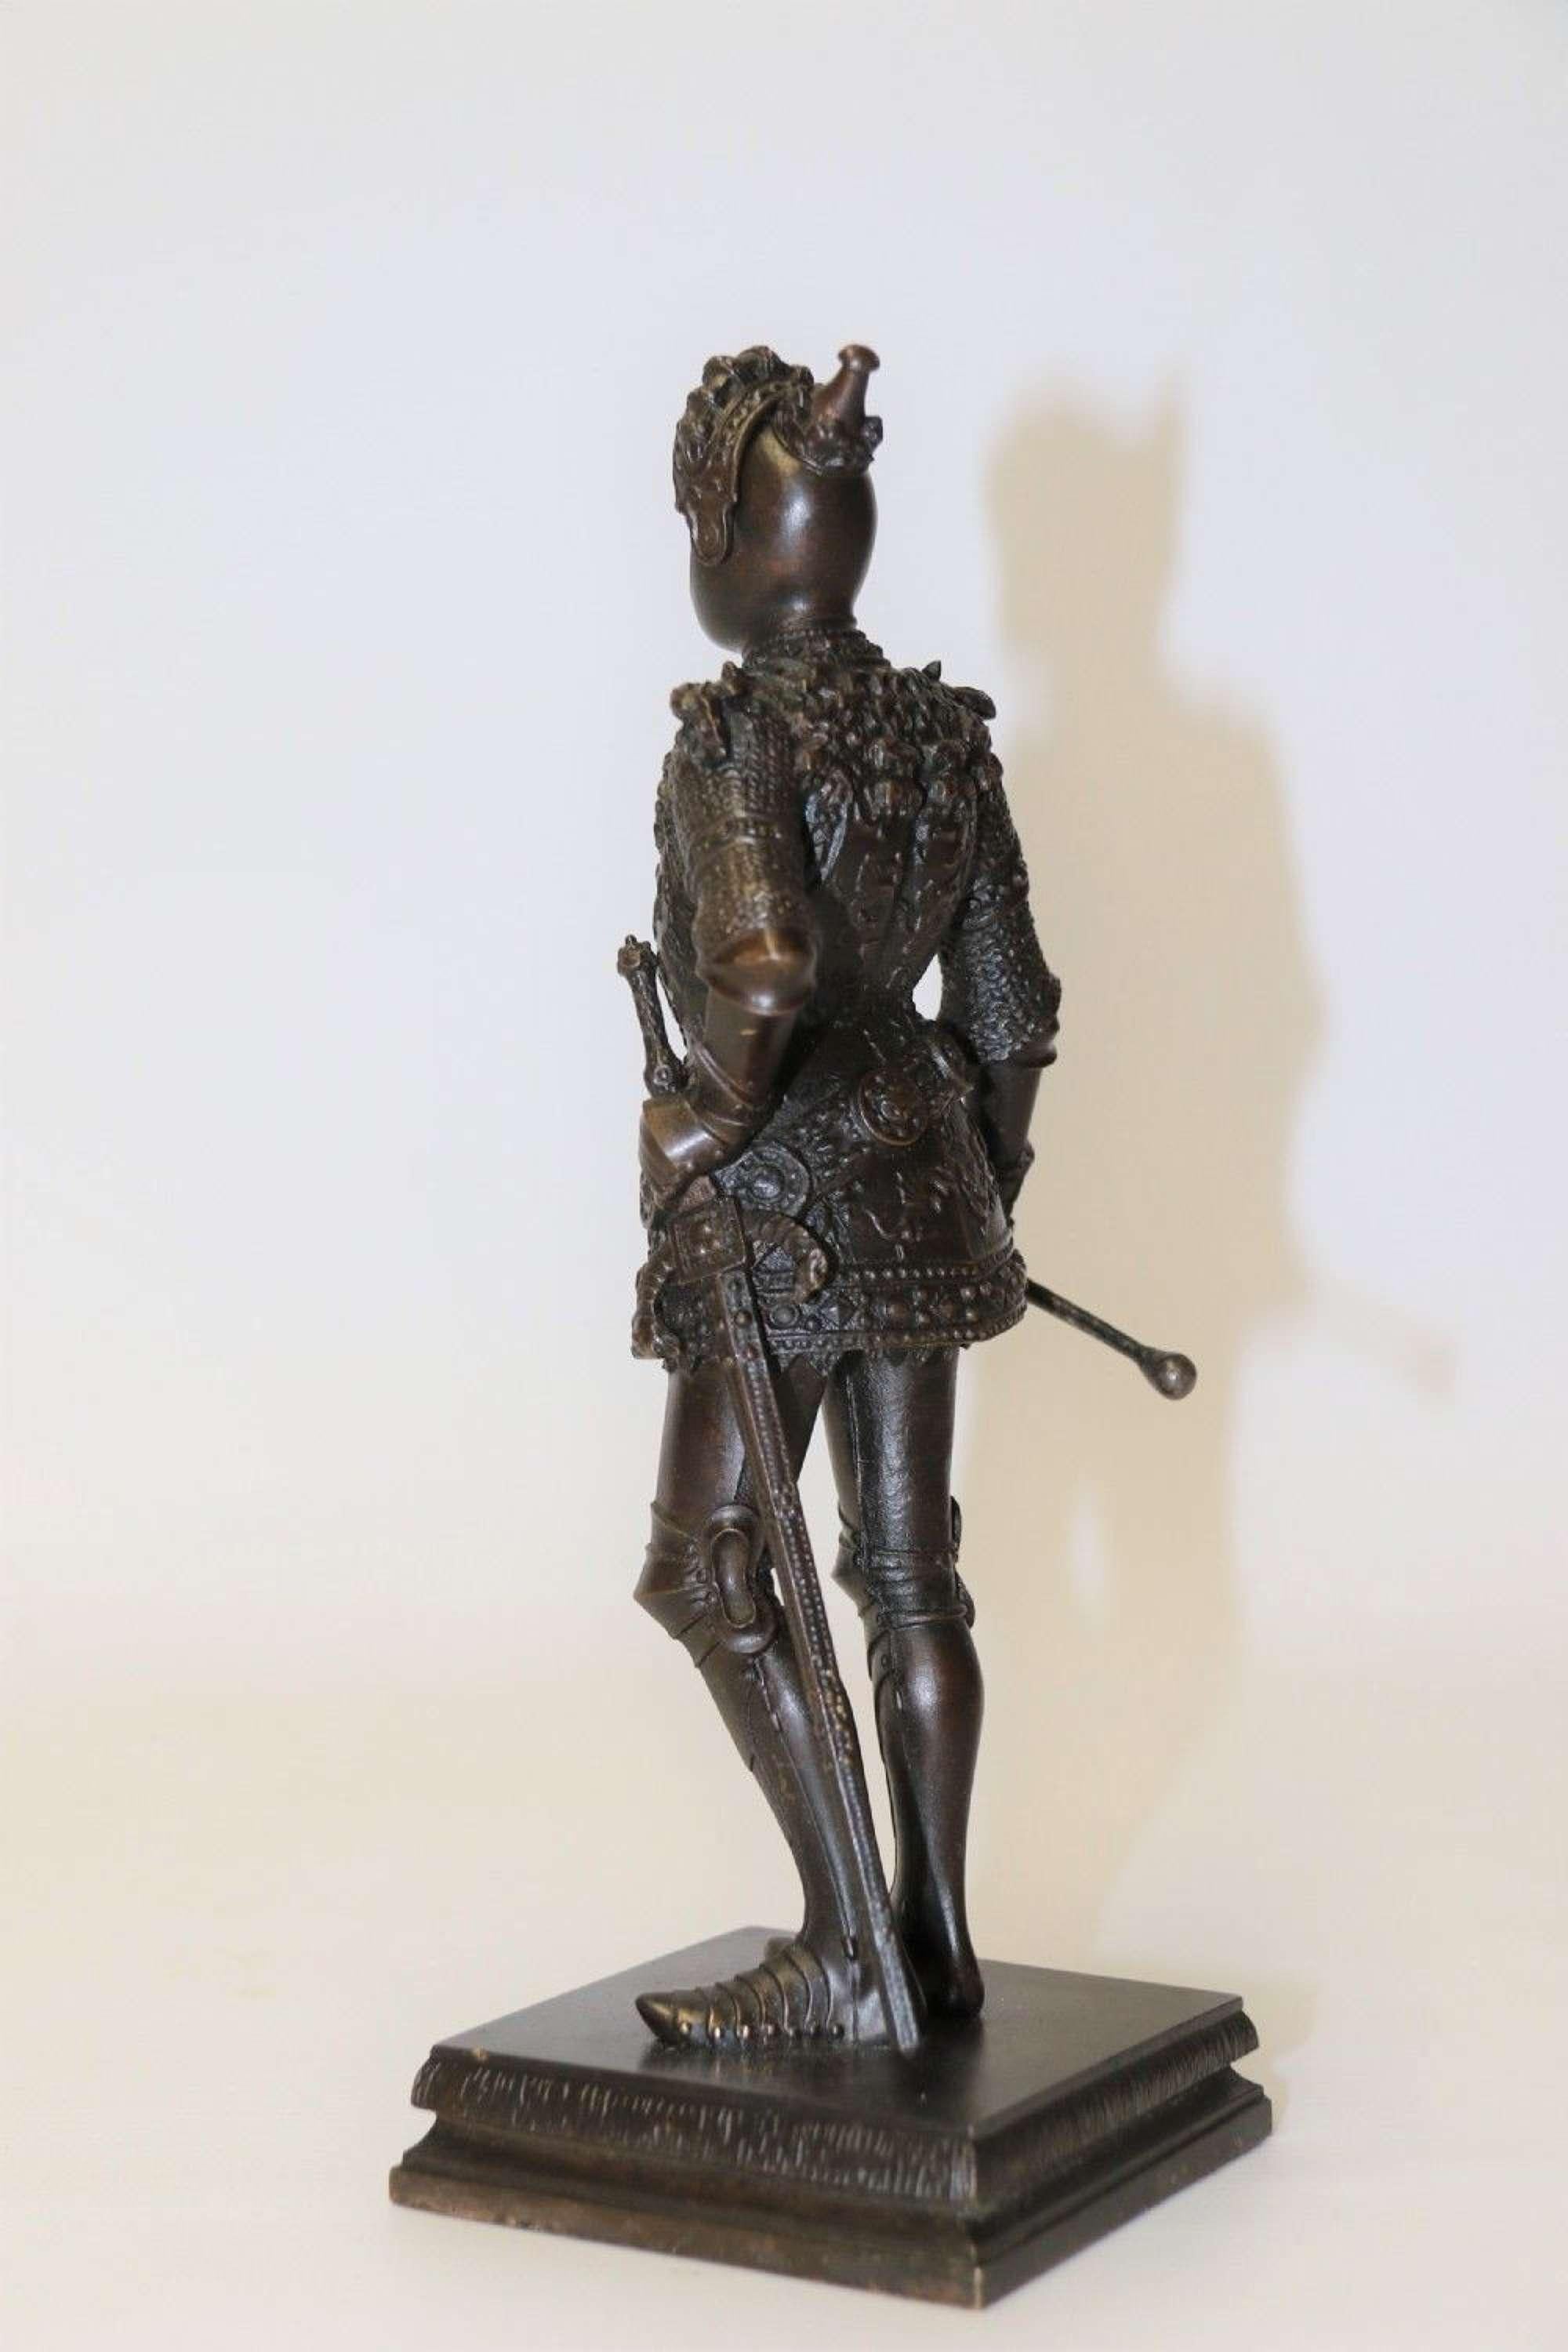 Eine hochdetaillierte Bronzestudie von König Artus in prächtiger Rüstung.

Diese hervorragend gearbeitete Bronzestudie des englischen Königs Artus in einer sehr aufwendigen Rüstung trägt auf der Vorderseite den Titel Arturkonic V England. Er steht